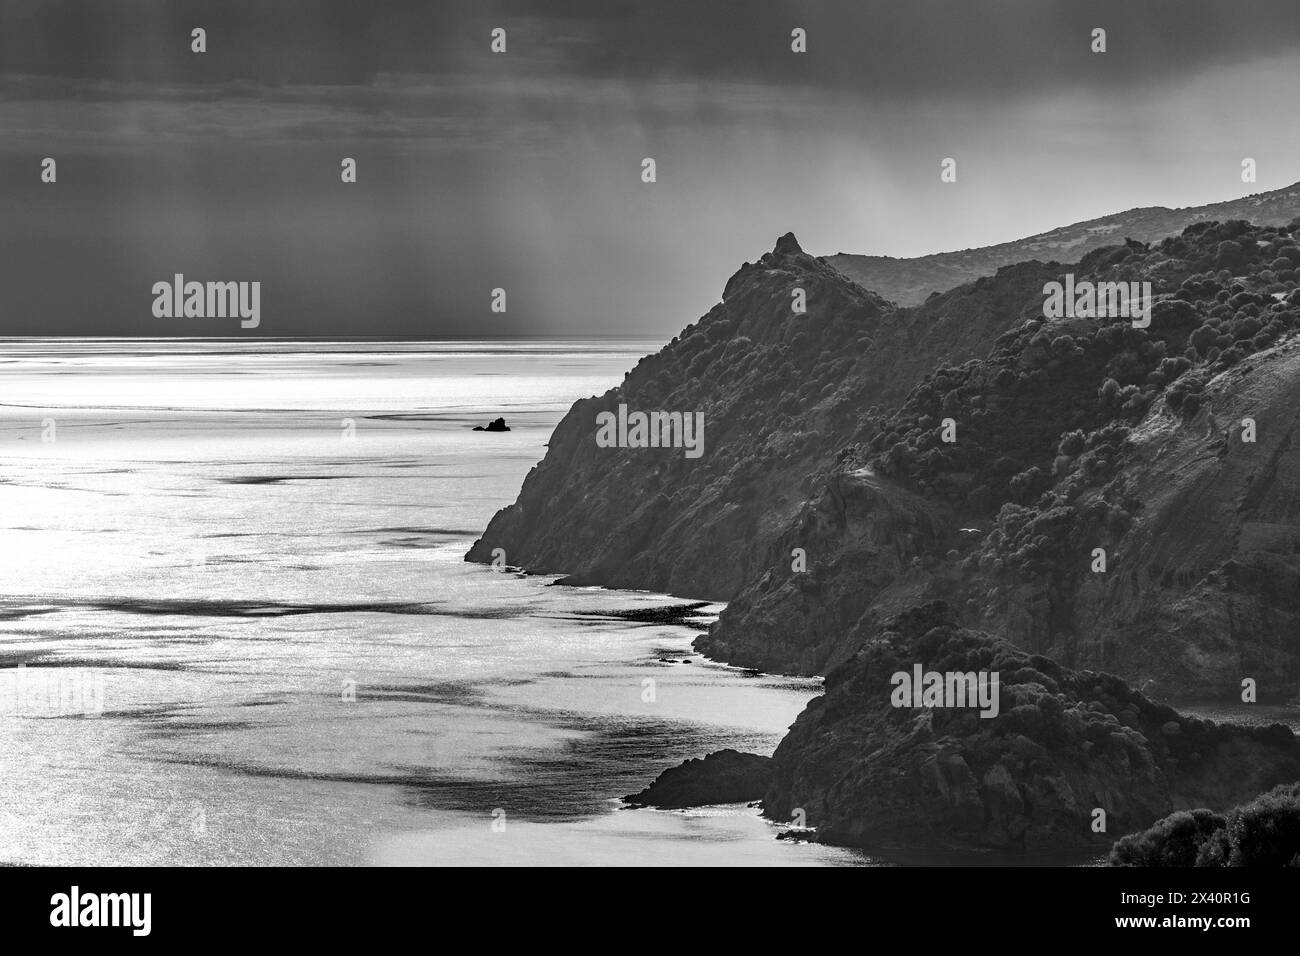 Immagine in bianco e nero di una vista costiera delle scogliere sarde che si affacciano sul Mar Mediterraneo con i raggi del sole che brillano attraverso le nuvole scure Foto Stock